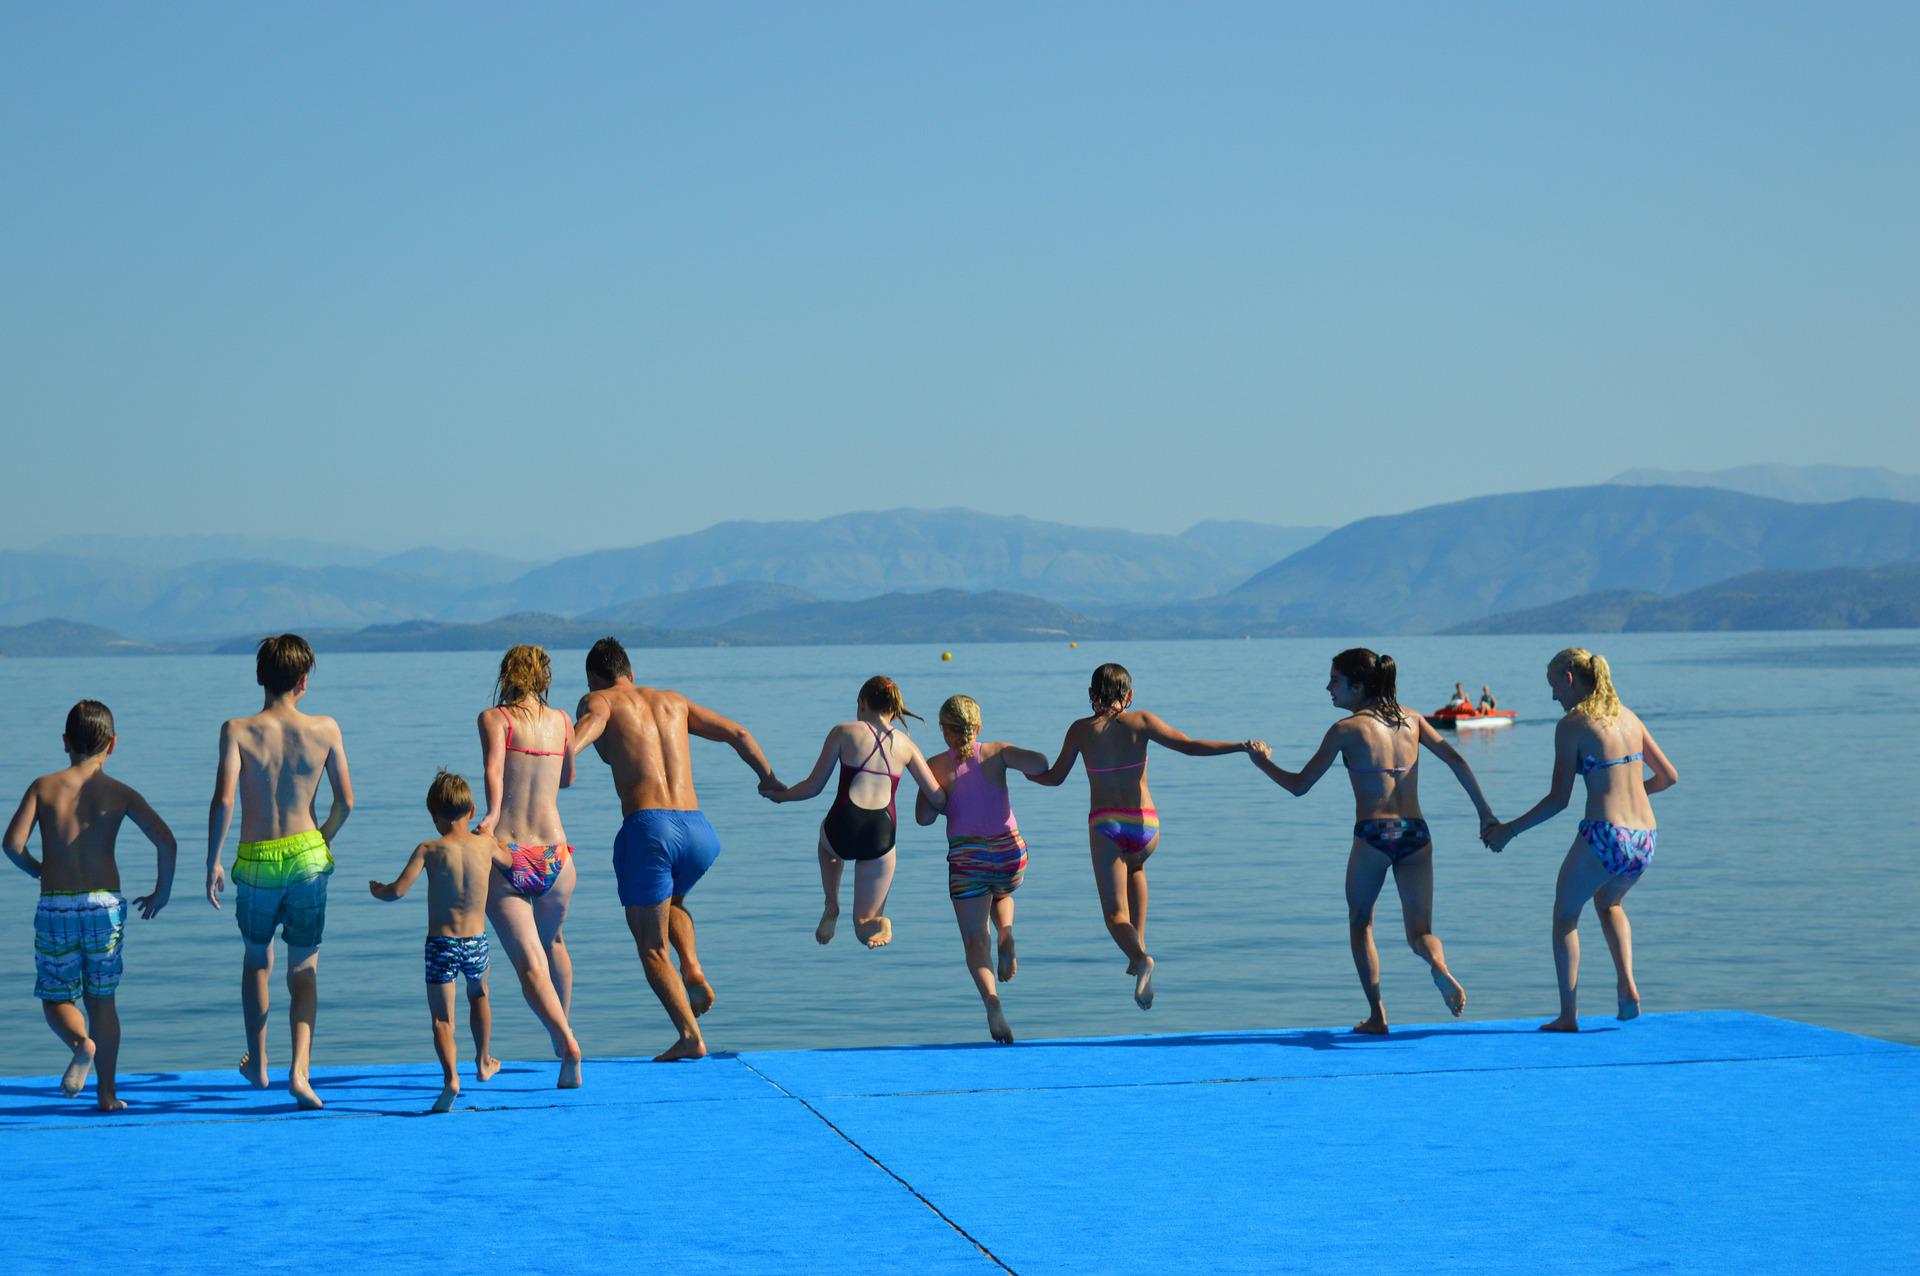 Kinder halten sich an der Hand und springen in einen See